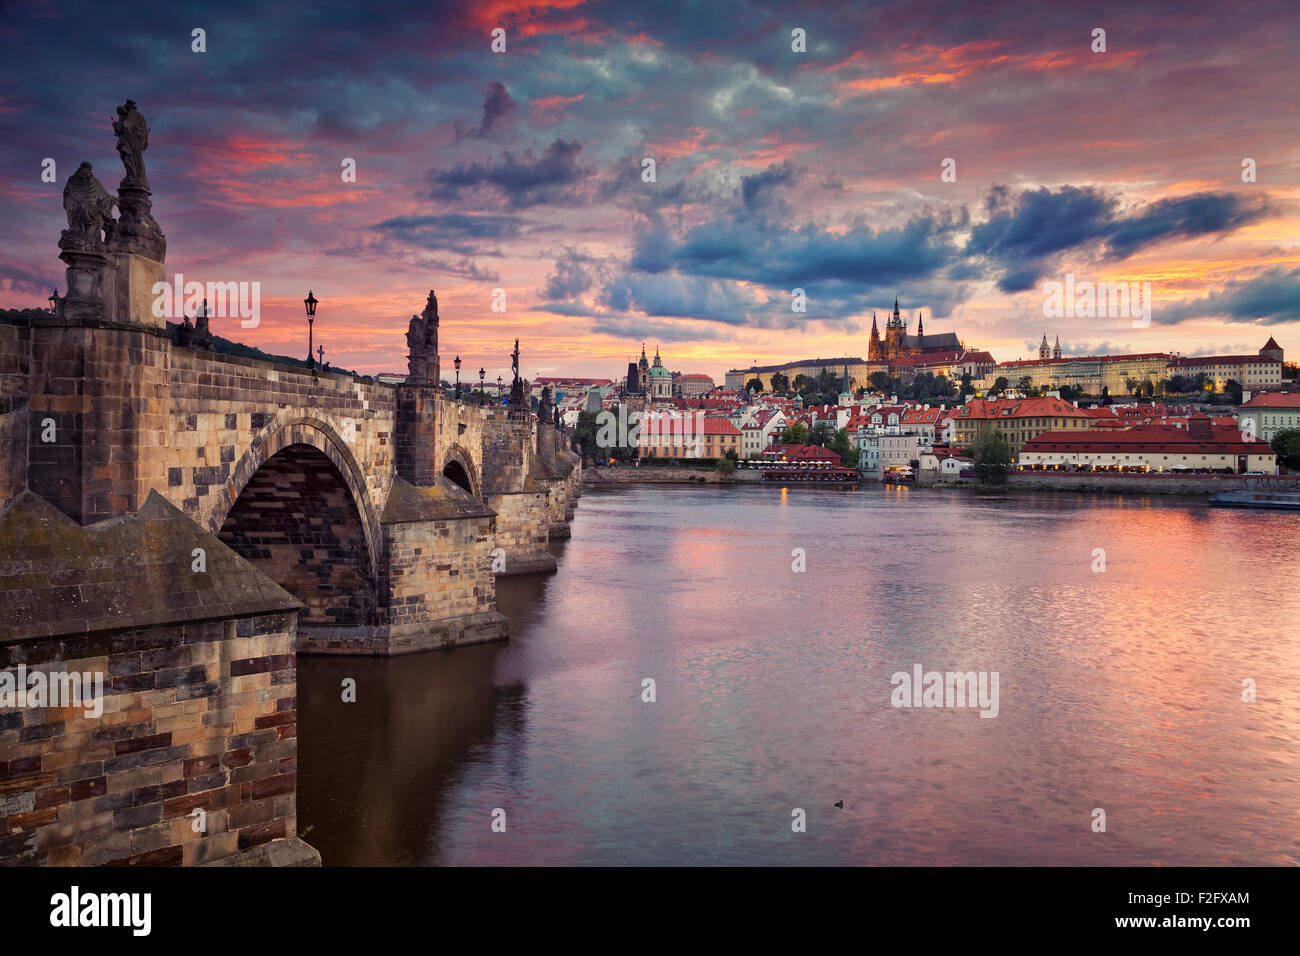 Praga. Immagine di Praga, capitale della Repubblica ceca, durante il bellissimo tramonto. Foto Stock